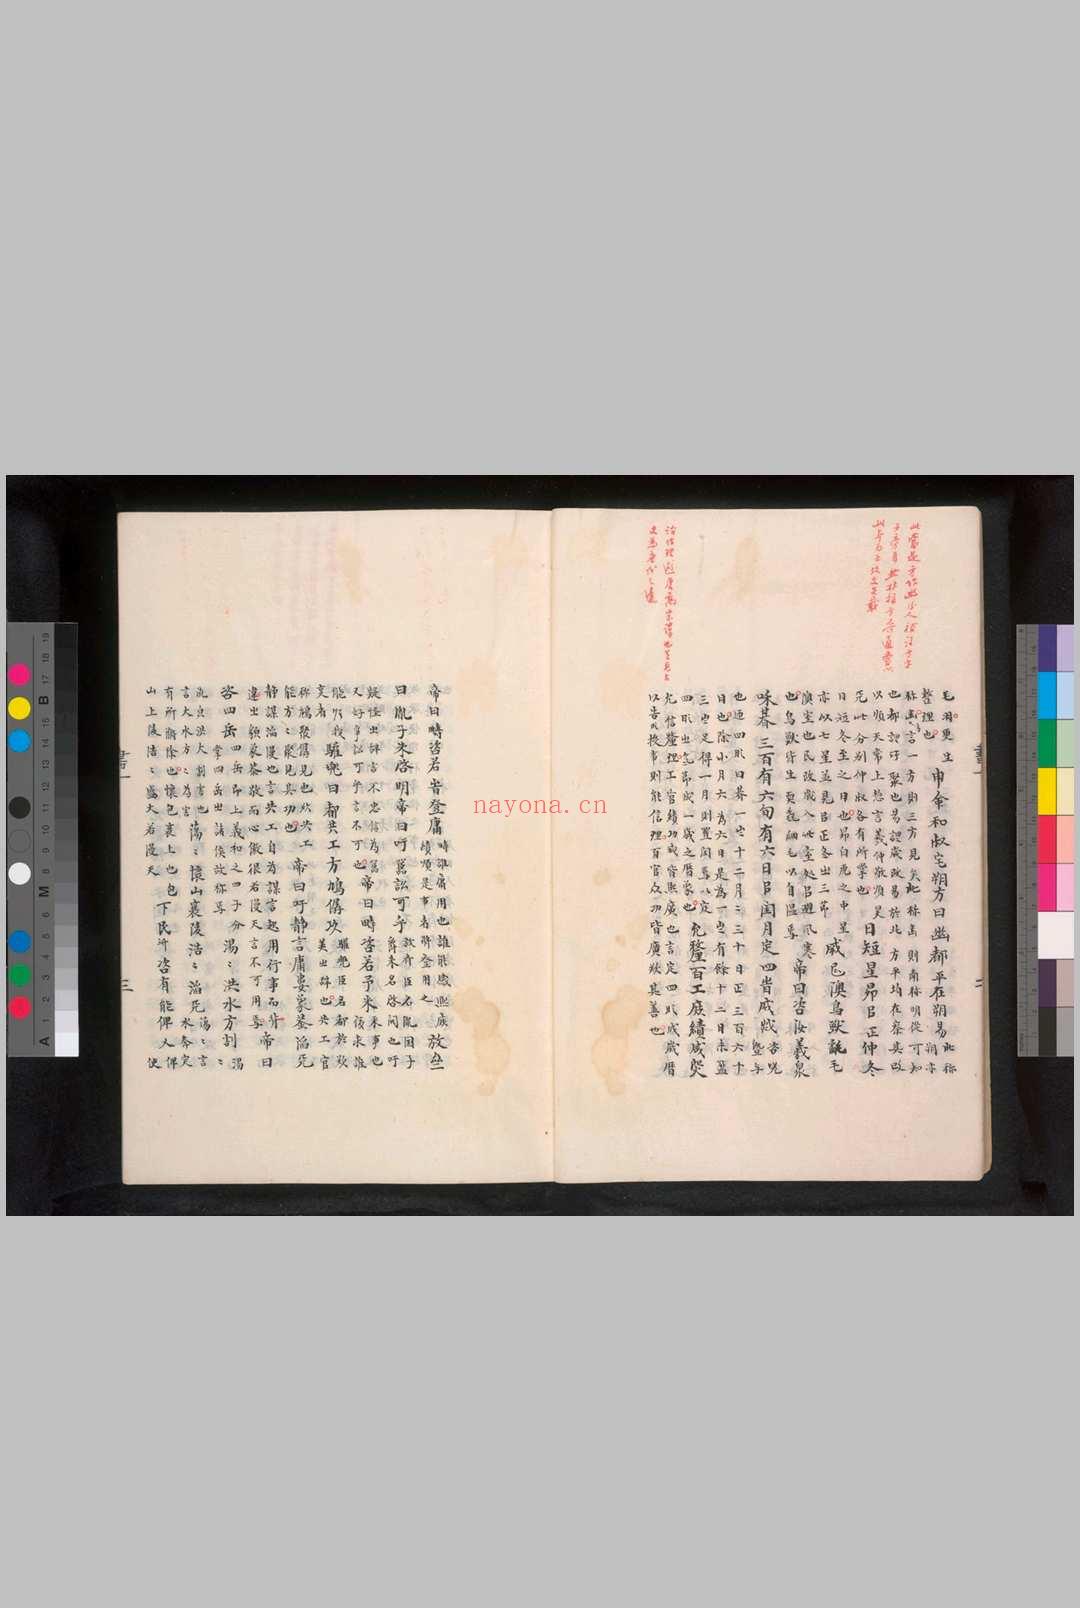 古文尚书 (汉)孔安国传, 旧题 影钞日本藏古写本